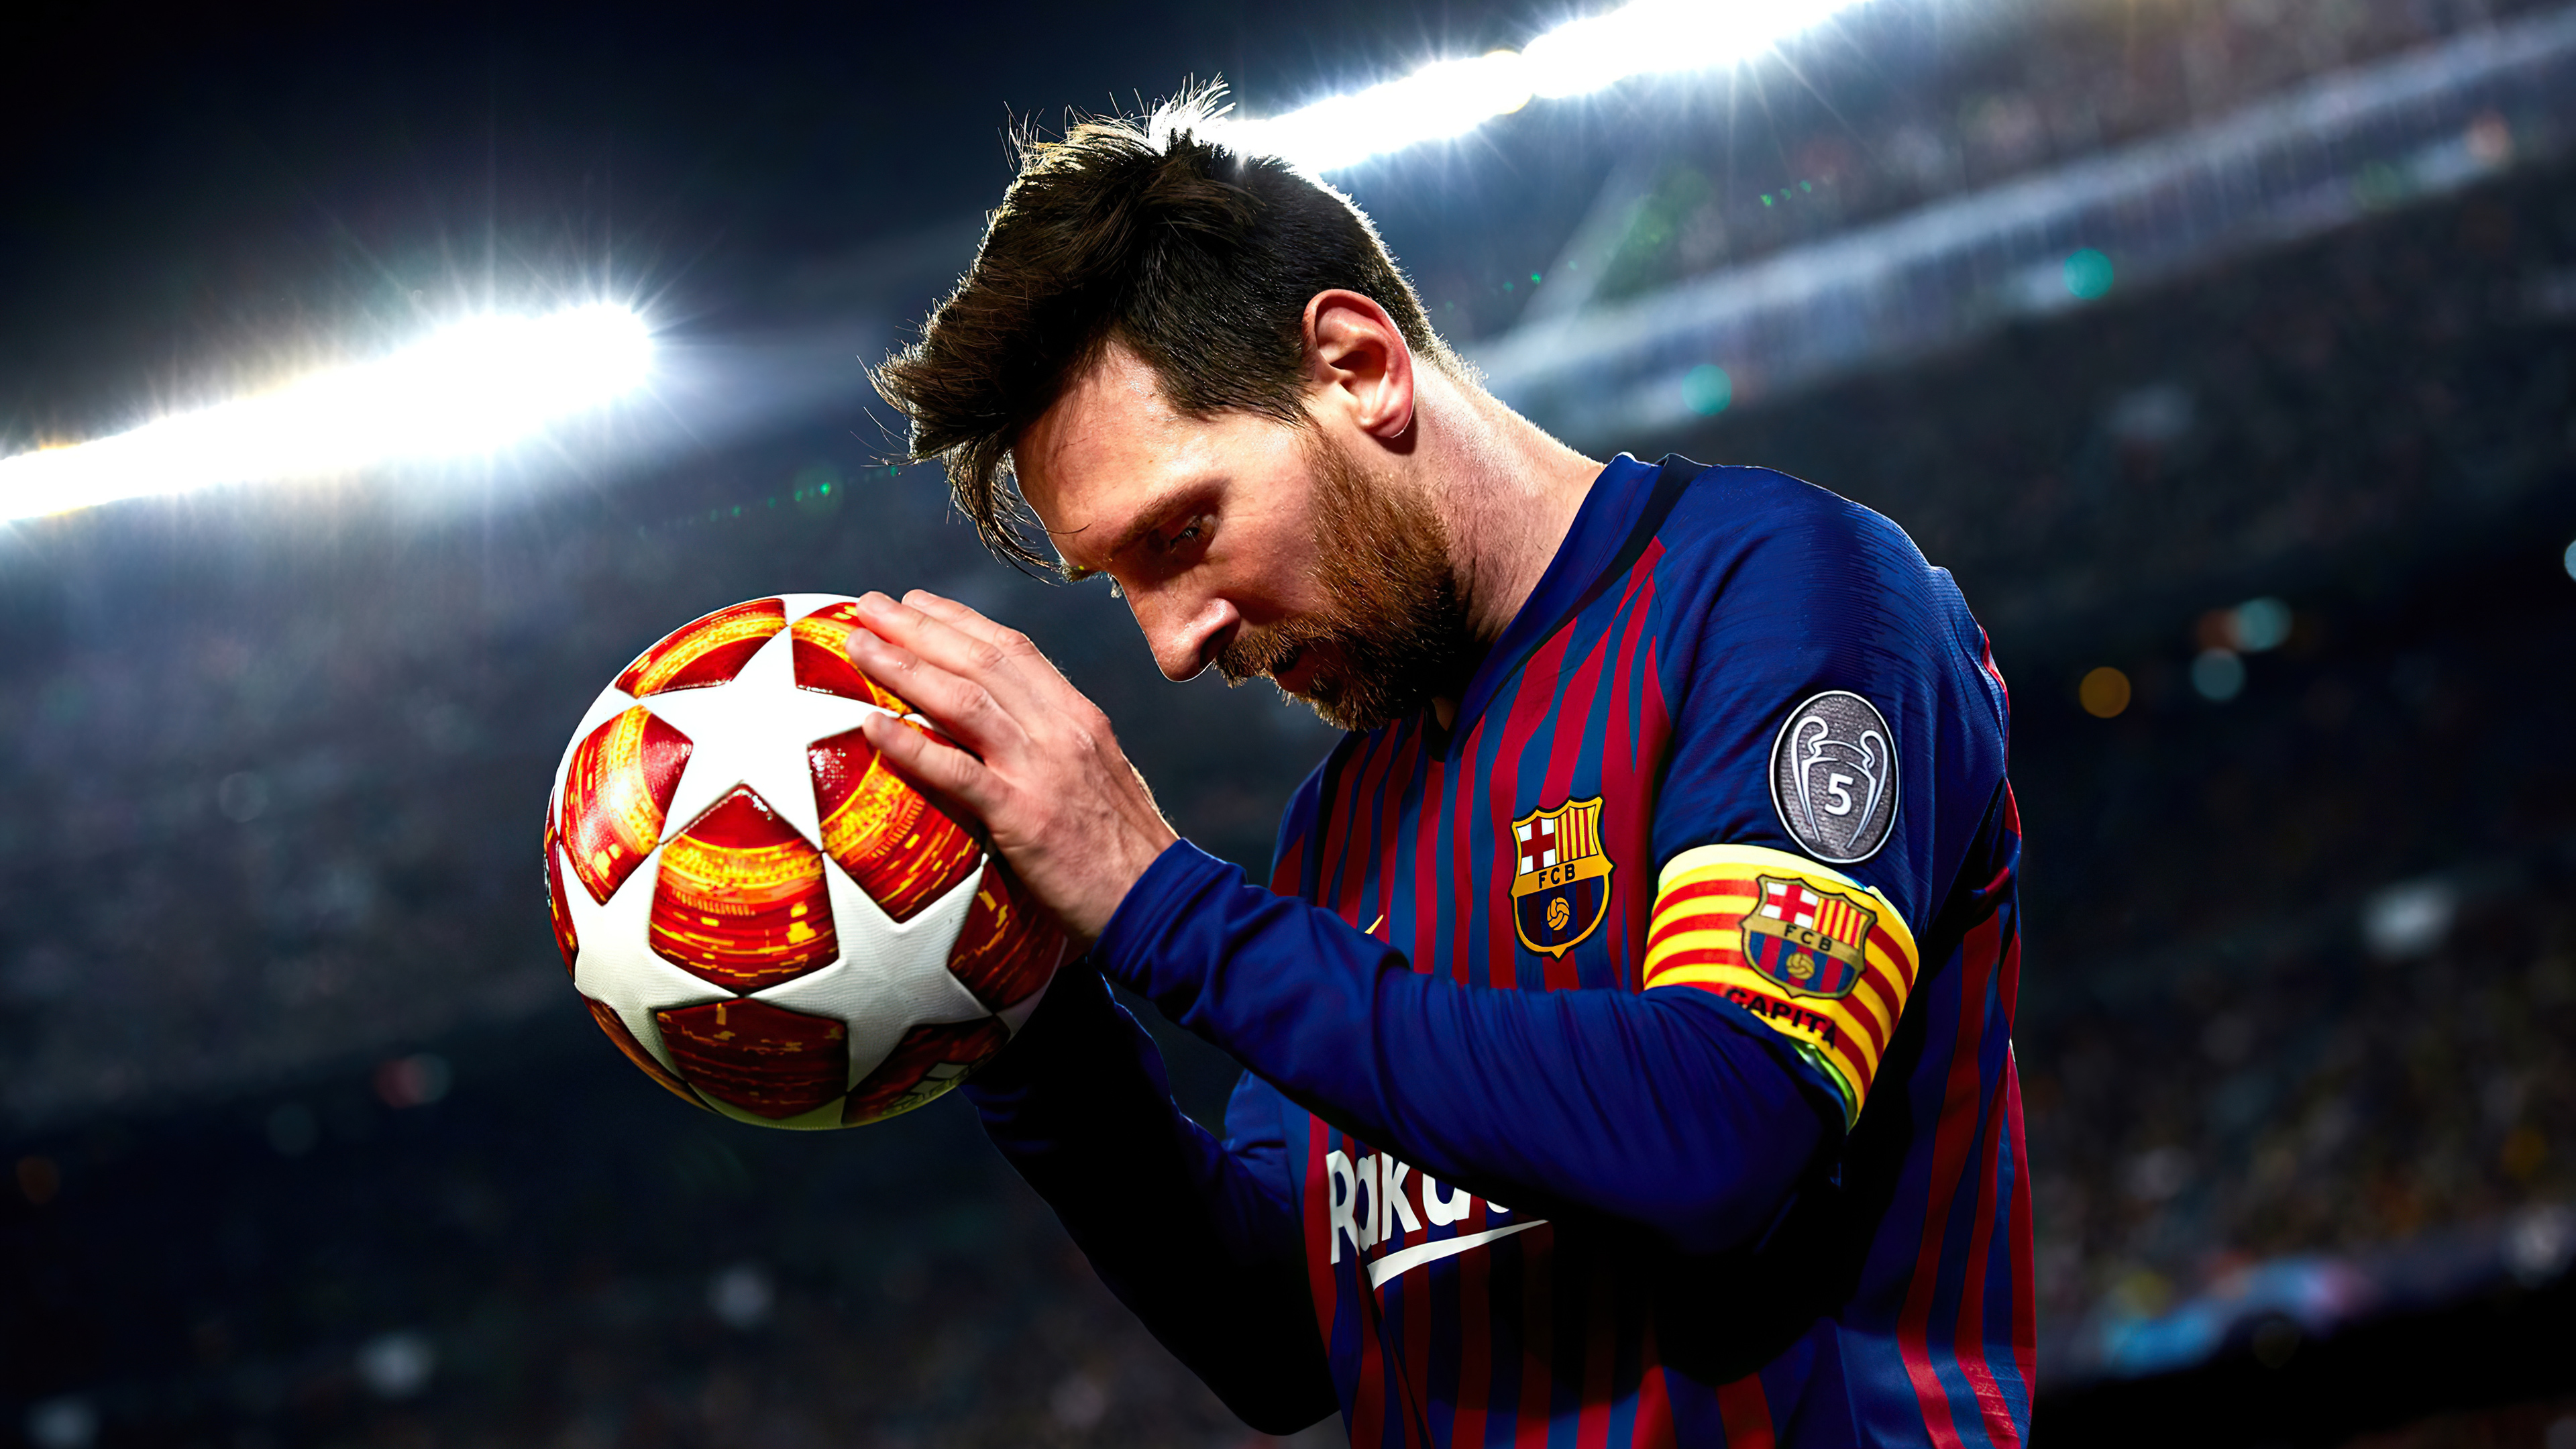 Hình nền 4K của Messi sẽ khiến cho màn hình của bạn trở nên sống động hơn bao giờ hết! Hãy chiêm ngưỡng những hình ảnh tuyệt đẹp về siêu sao bóng đá này và cho chính mình trải nghiệm sức mạnh của độ phân giải 4K.